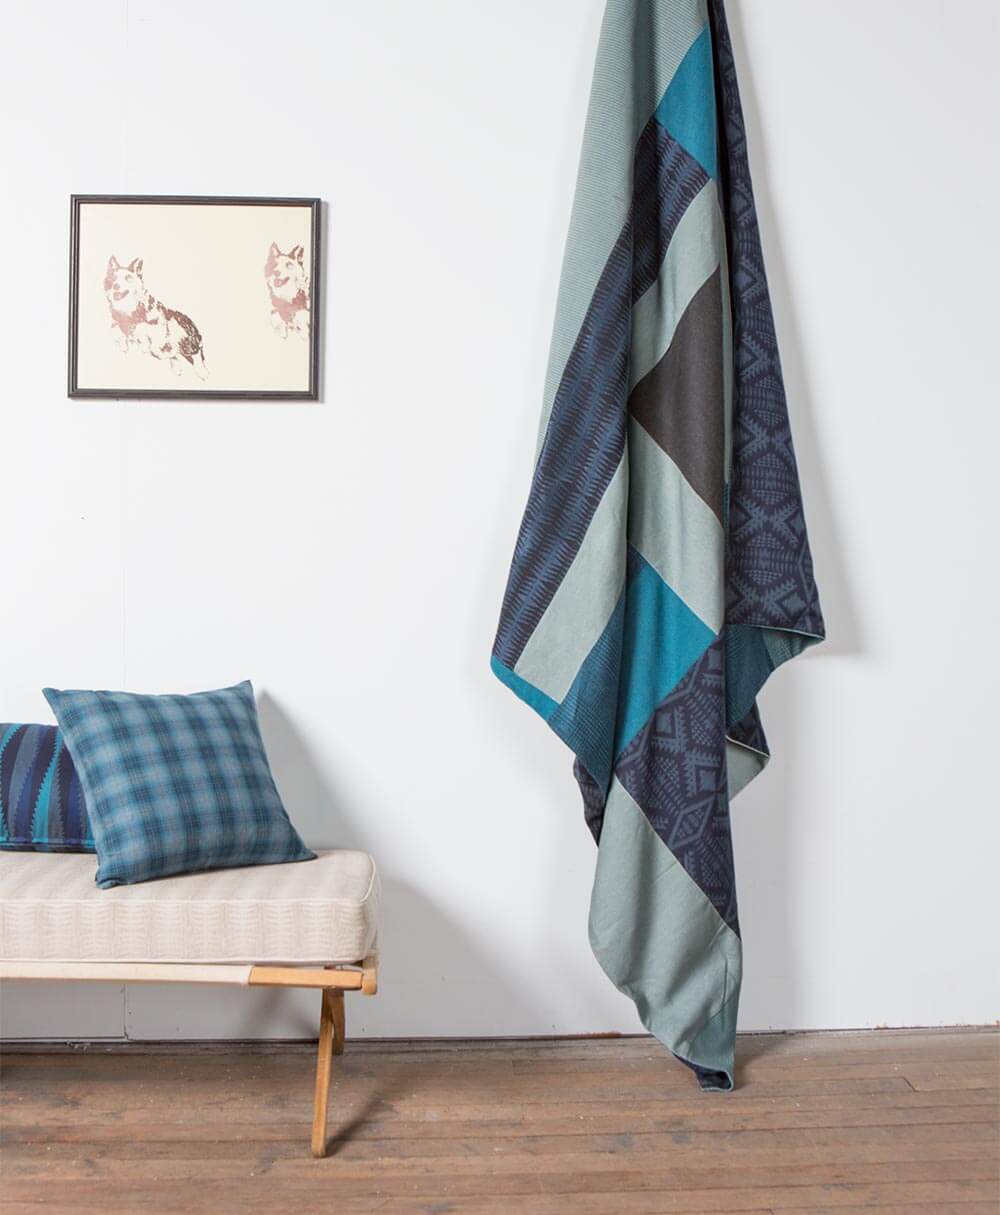 Édredon fabriqué avec des morceaux de tissus d’ameublement Pendleton par Sunbrella accroché au plafond à côté d’oreillers à motifs bleus.